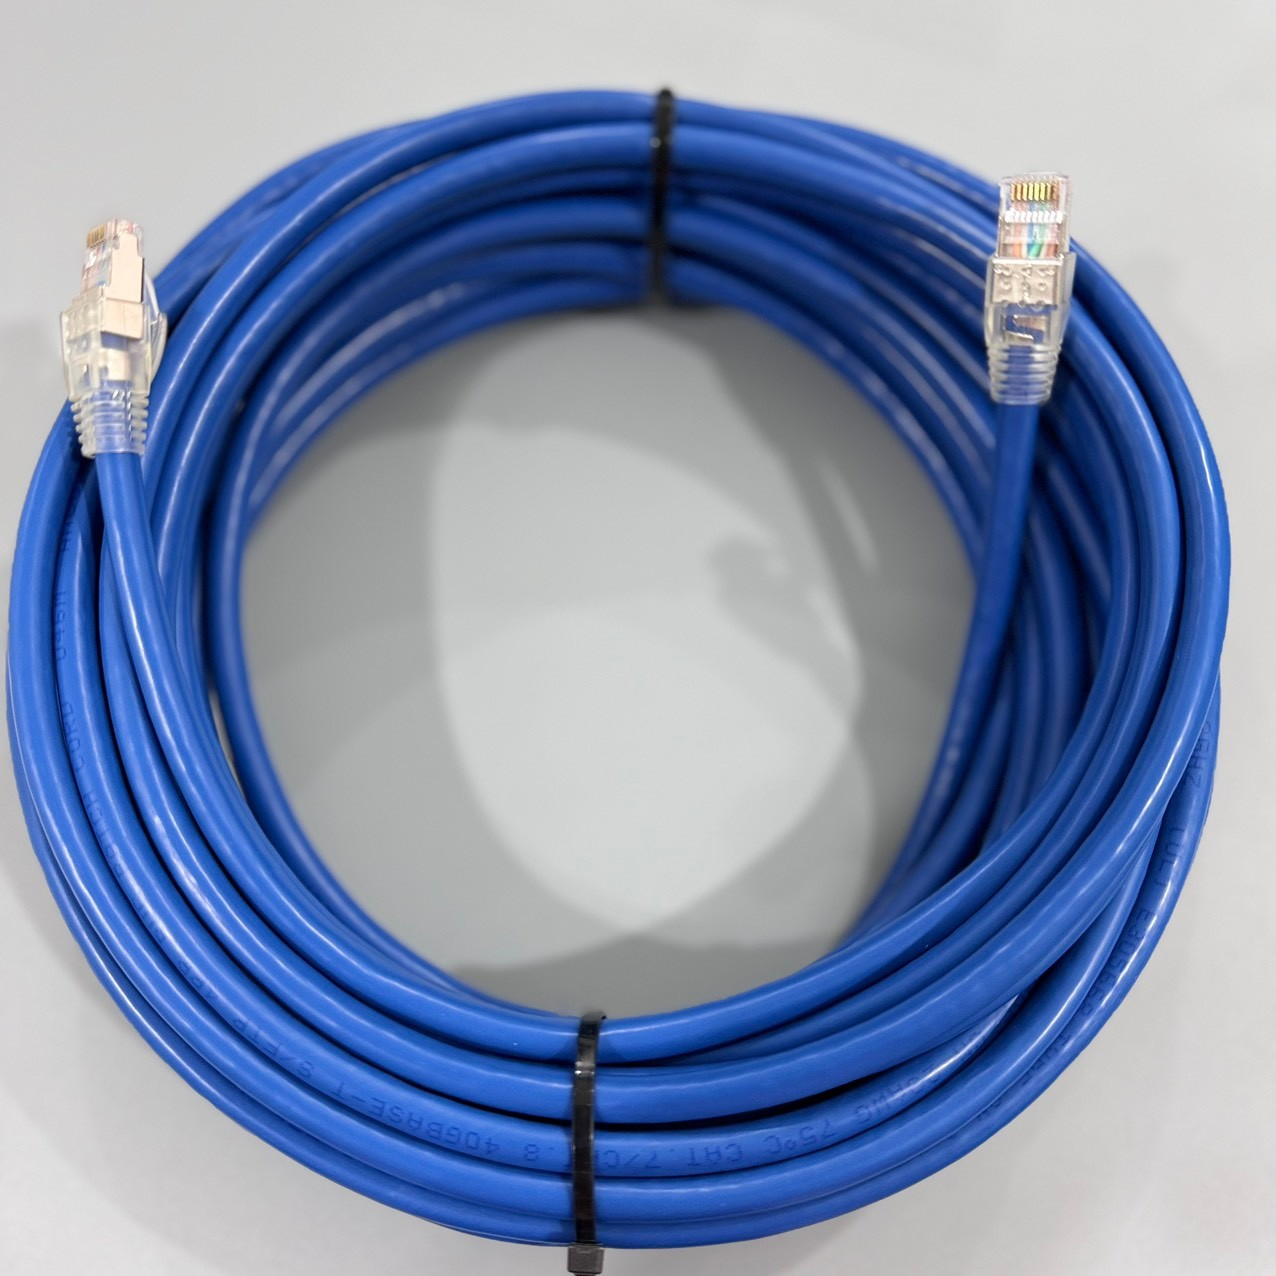 Dây cáp mạng gắn đầu nối, CAT7 UTP, màu xanh, dài 15m, Hiệu Ancomteck- ACT-LAN-7S15